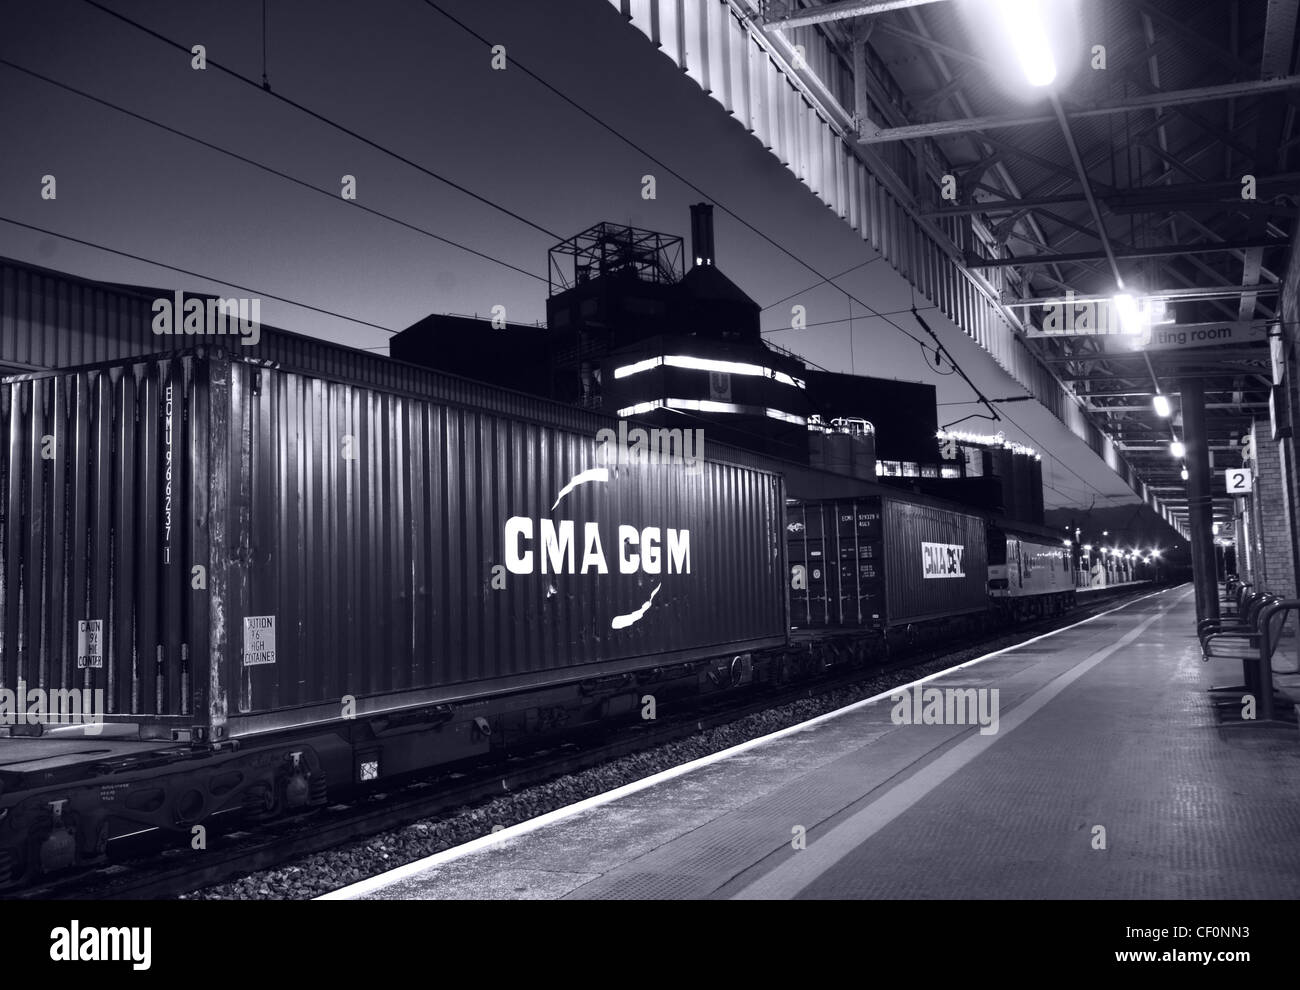 Le train CMA CGM Freight passe par Warrington Bank Quay, une gare électrifiée de la côte ouest dans le Cheshire, en Angleterre, au Royaume-Uni Banque D'Images